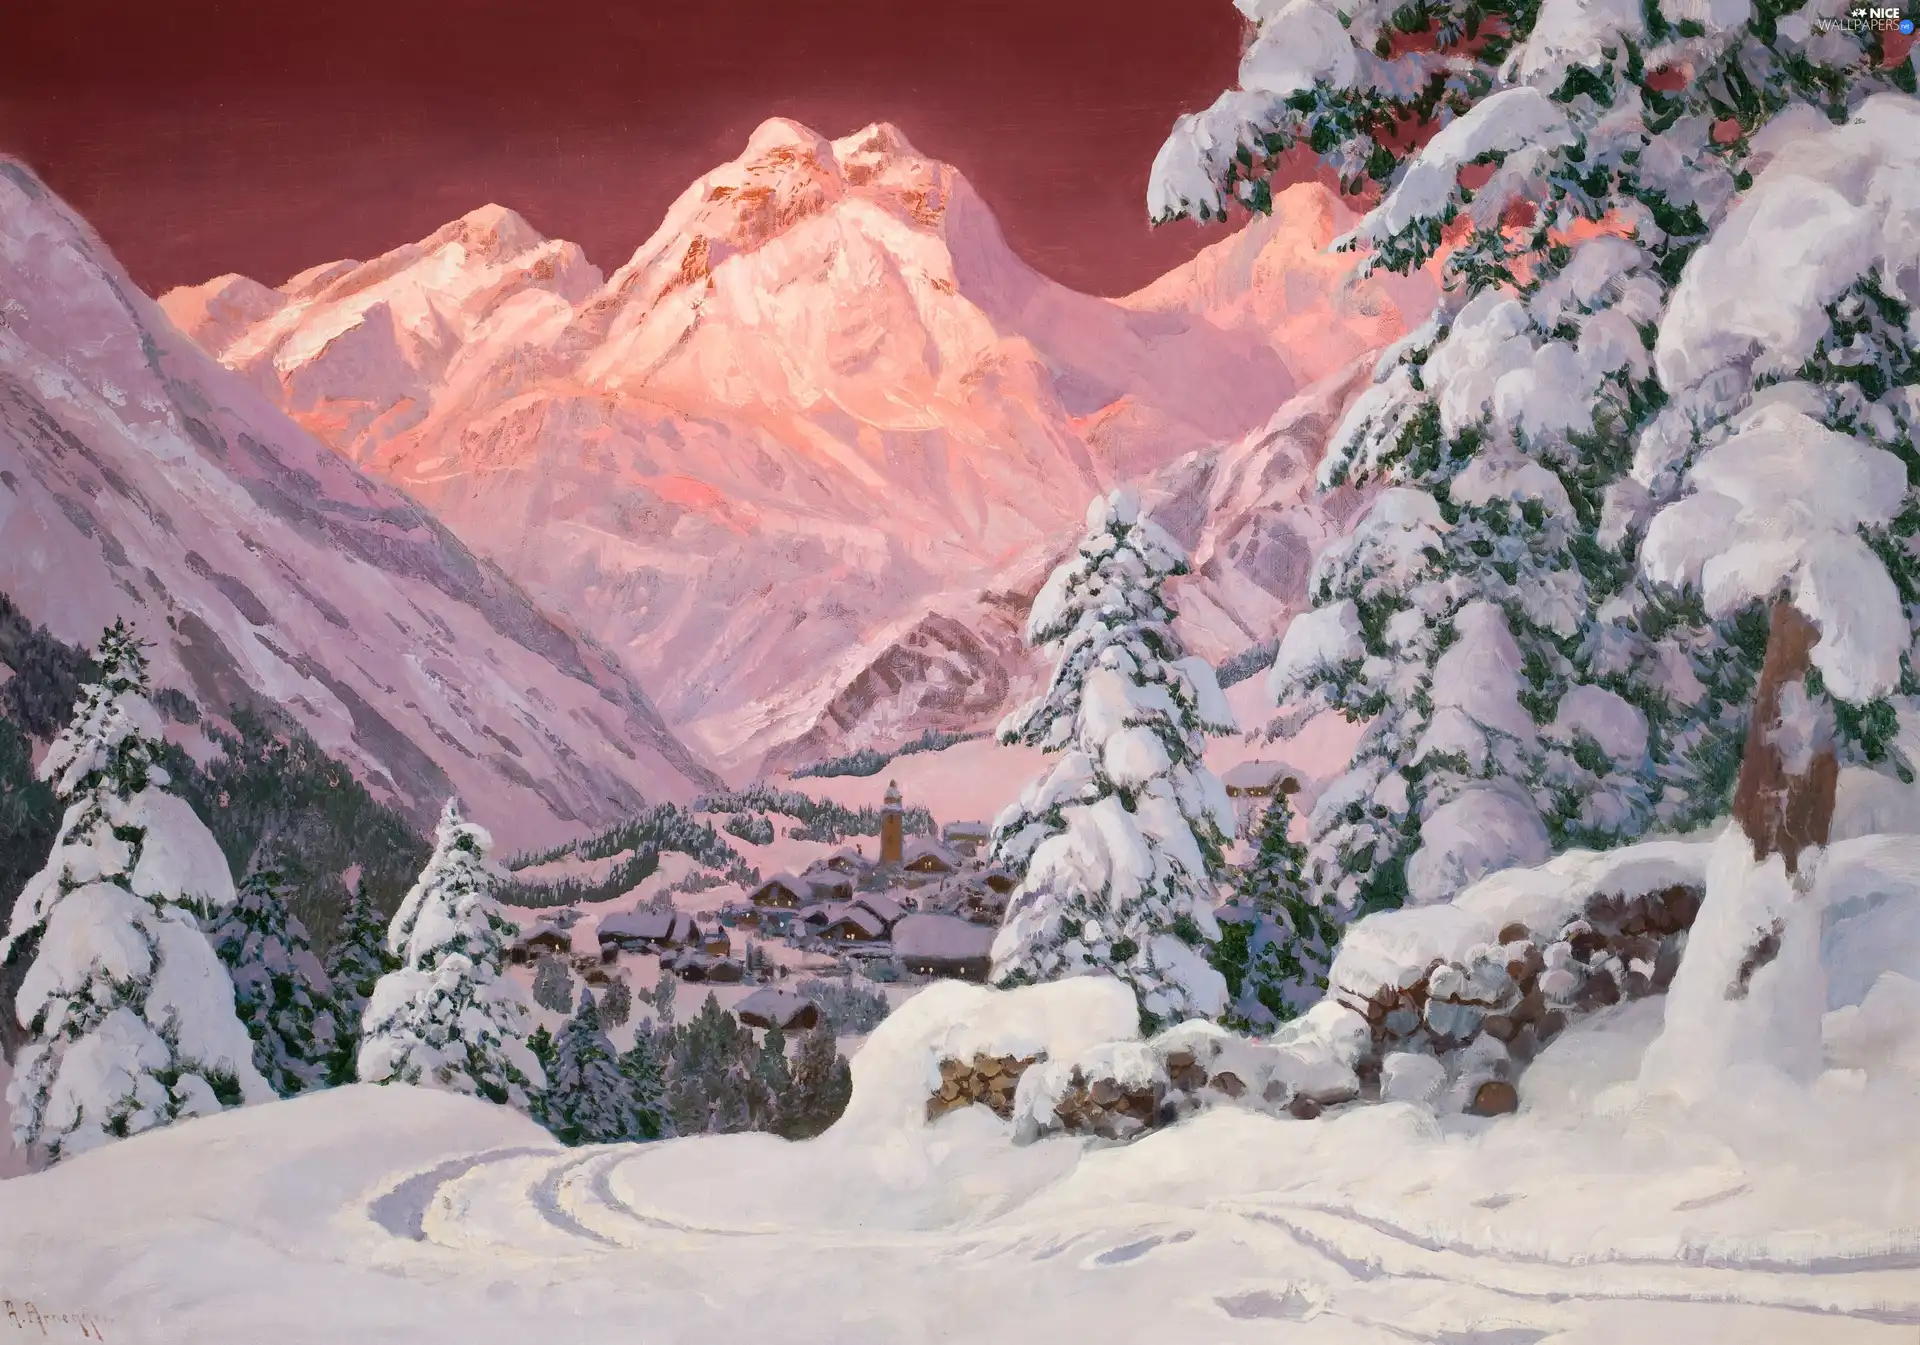 viewes, Mountains, winter, Alois Arnegger, snow, trees